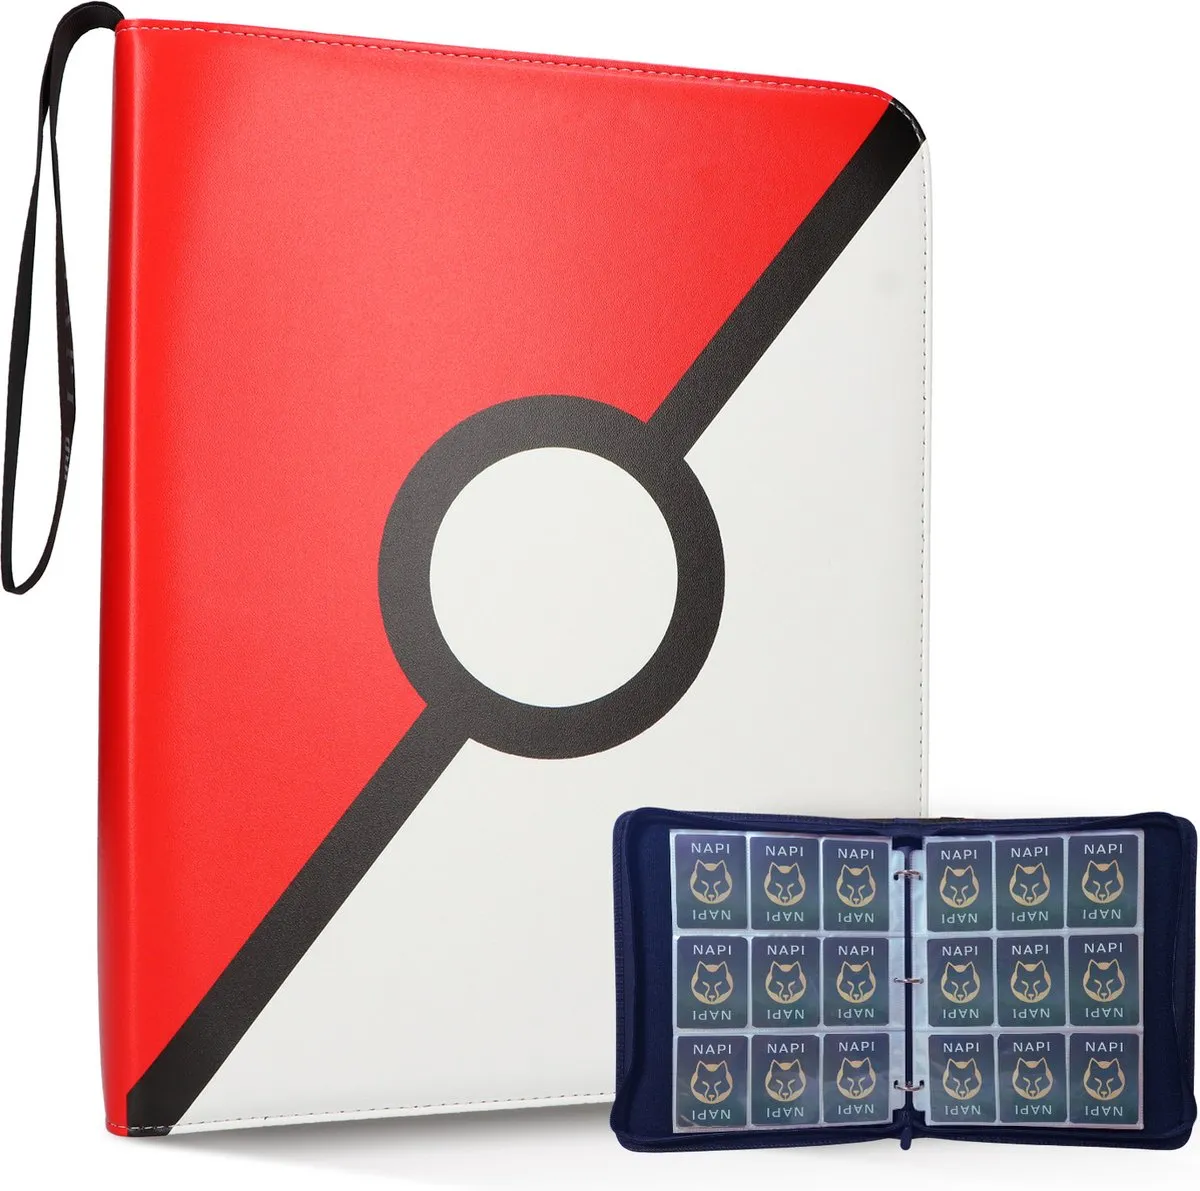 NAPI Verzamelmap Geschikt voor Pokémon - Map voor 900 Kaarten - 50 Pagina’s - 9 Pocket - A4 Formaat - Premium Kwaliteit - Rood - Box - Binder speelgoed